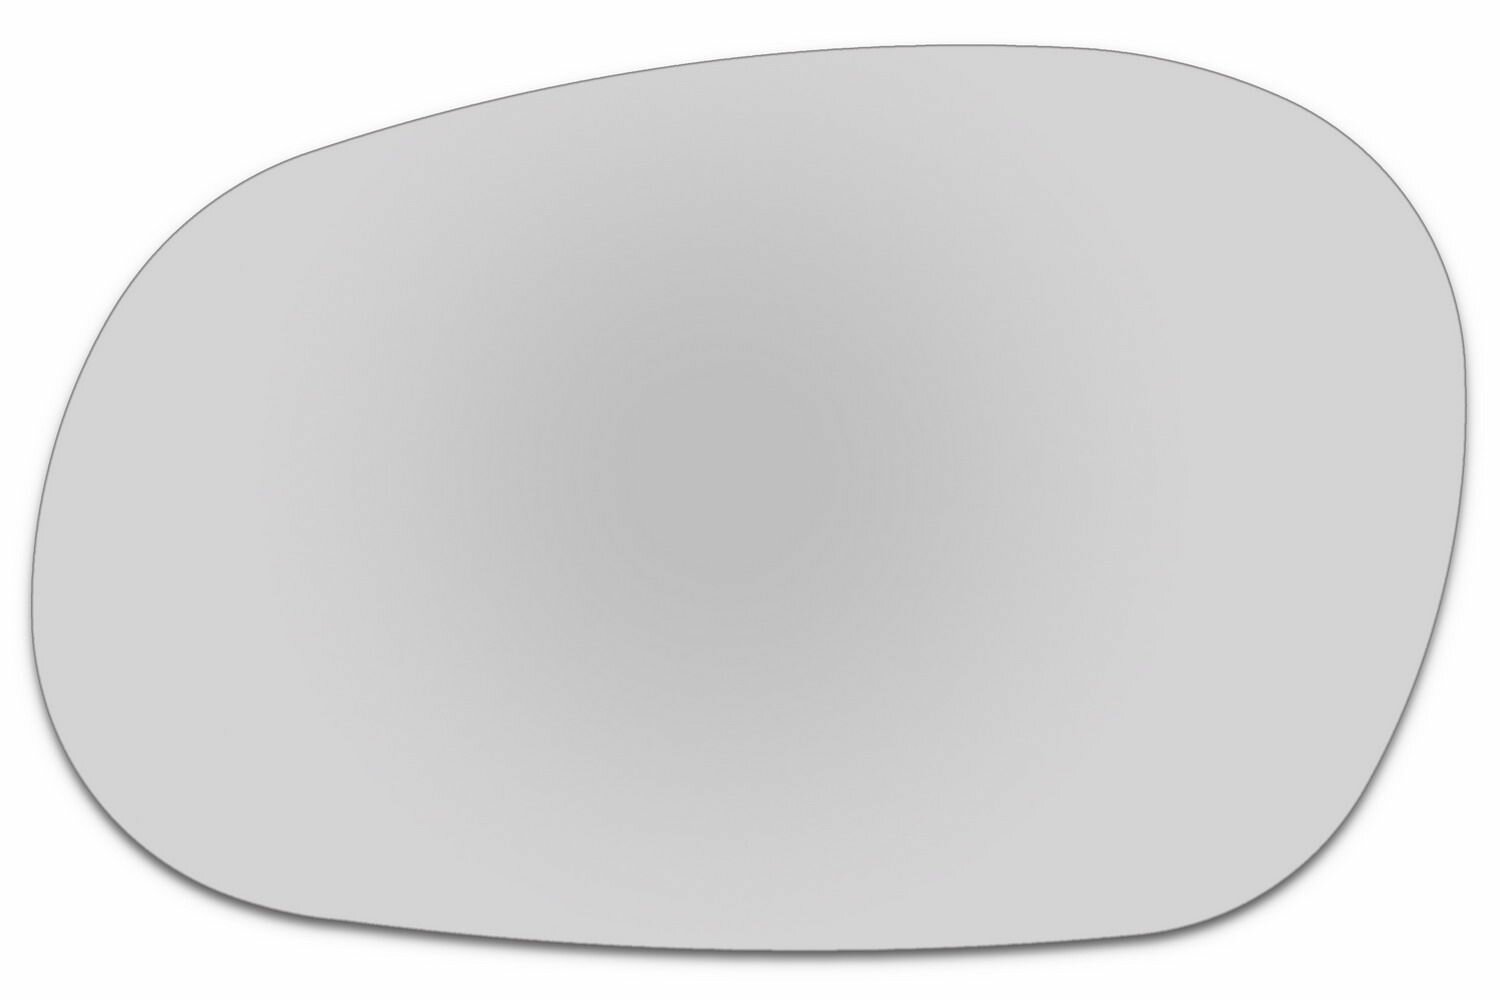 Элемент зеркала CHEVROLET Lanos Type 1 c 1997 по 2009 левый плоский без обогрева 16449802